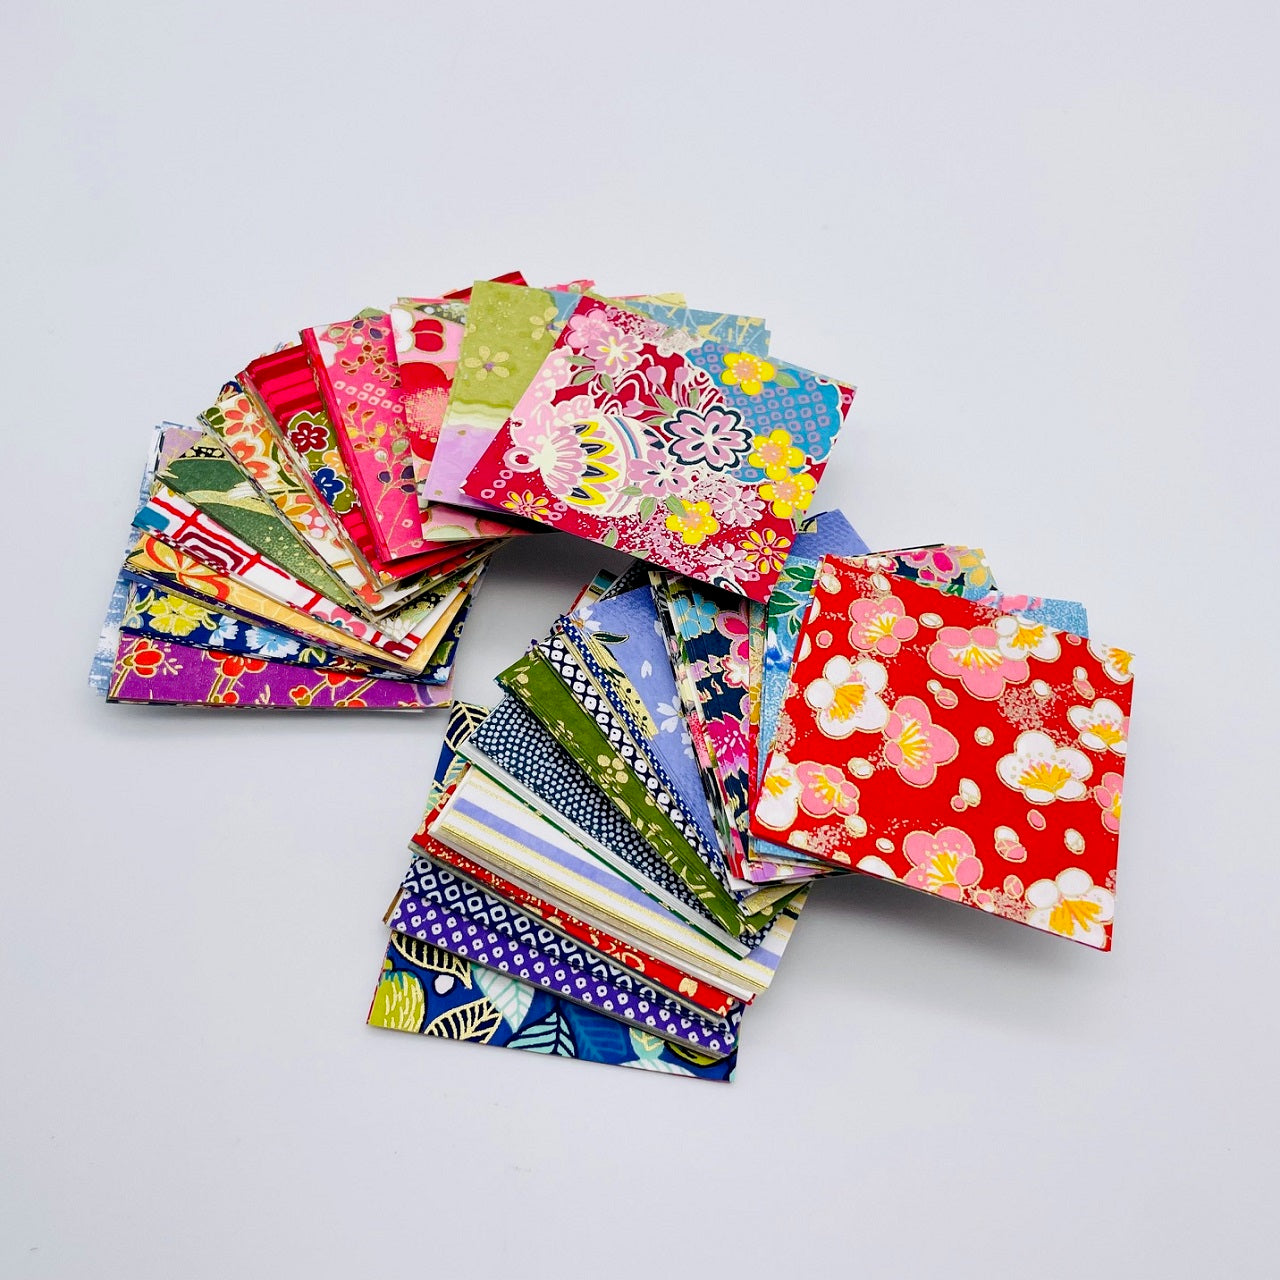 Origami 6x6cm, 100 sheets Pack - Yuzen Washi